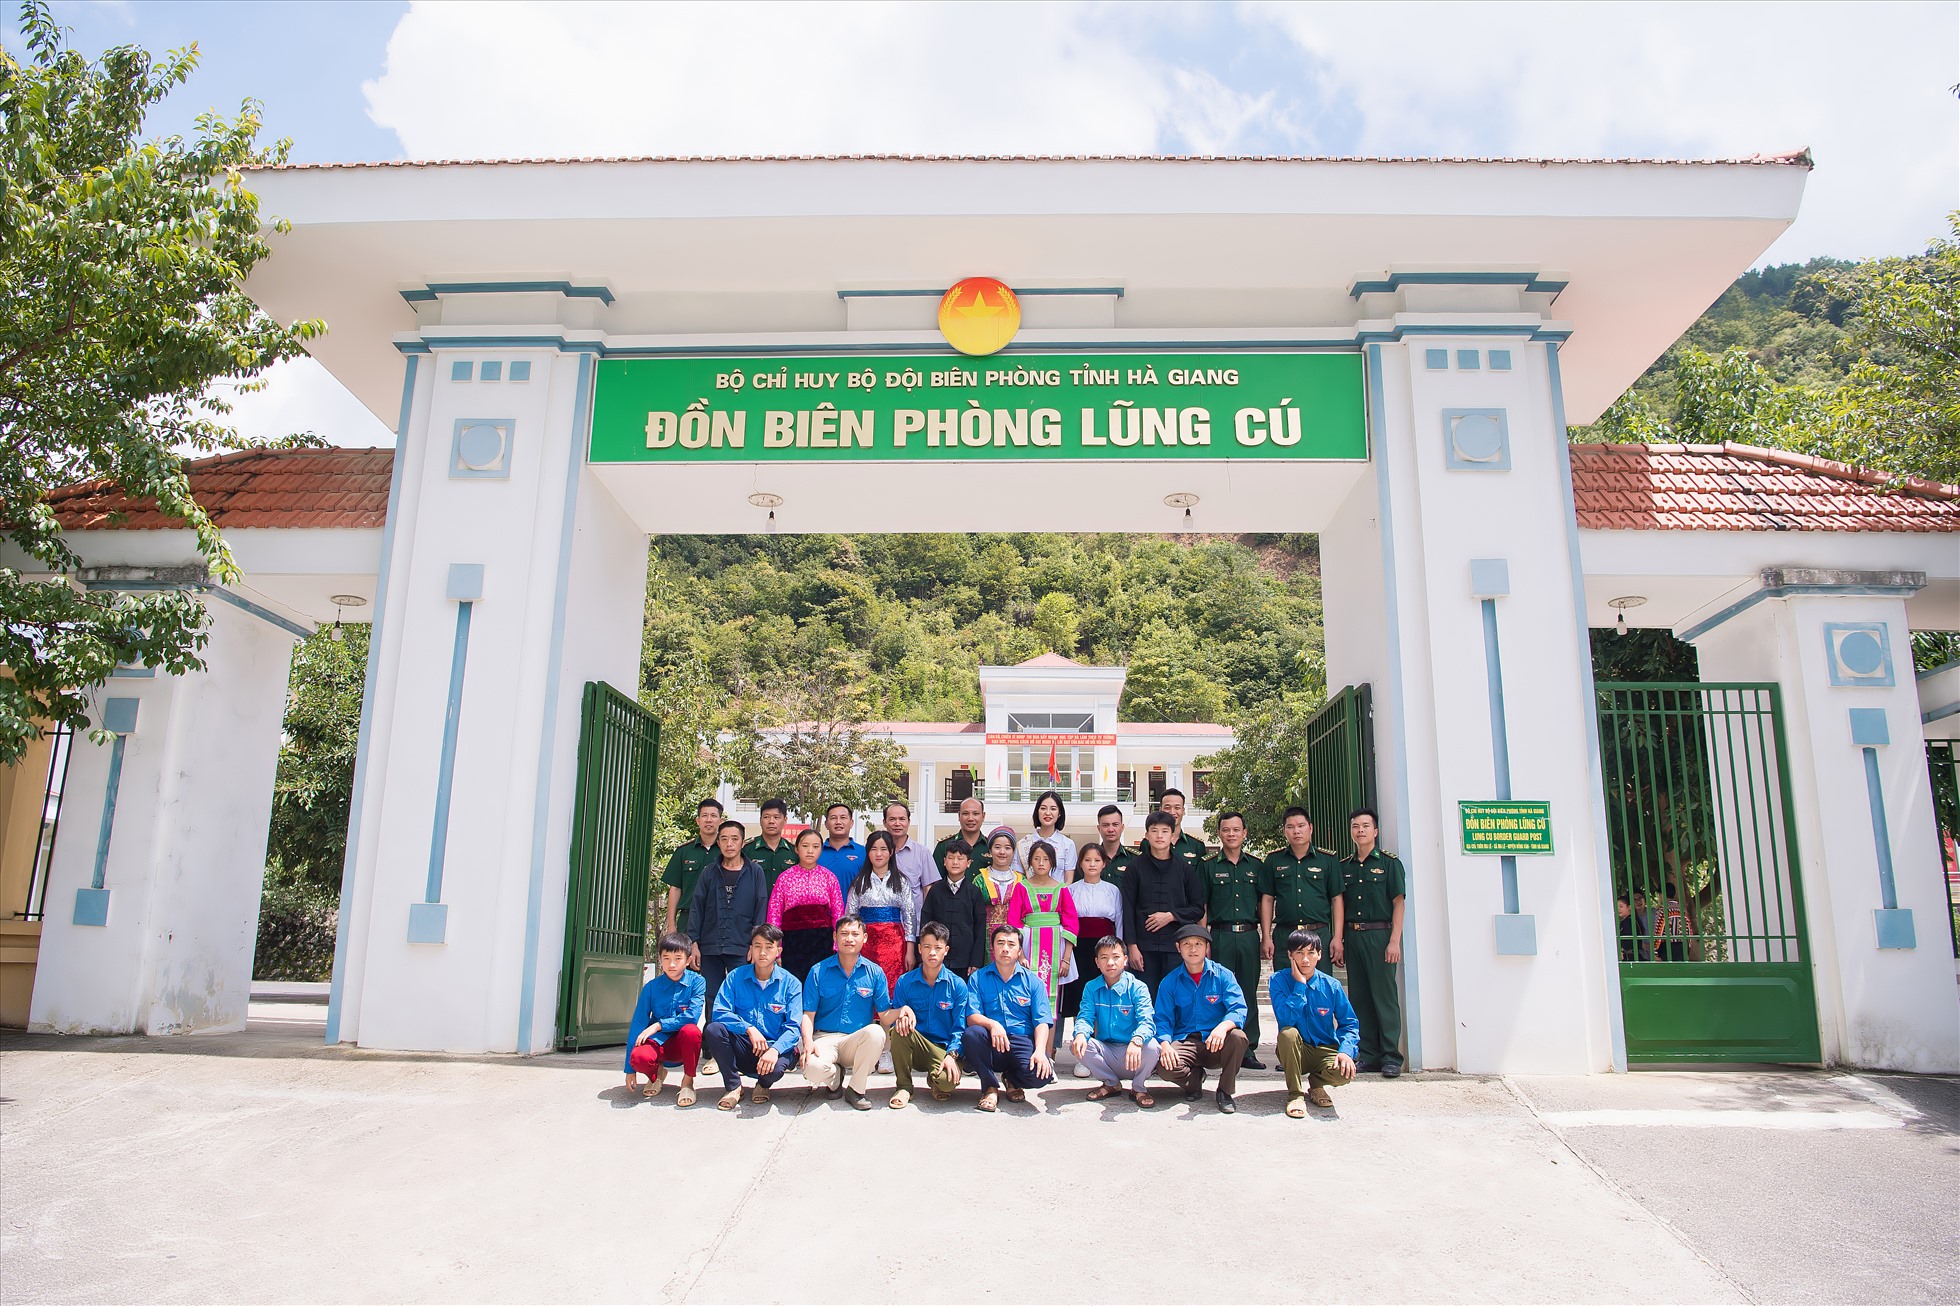 Cũng trong chuyến đi này, Hoa hậu Nông Thuý Hằng đã đến thăm đồn biên phòng Lũng Cú, huyện Đồng Văn, tỉnh Hà Giang. Ảnh: NSCC.